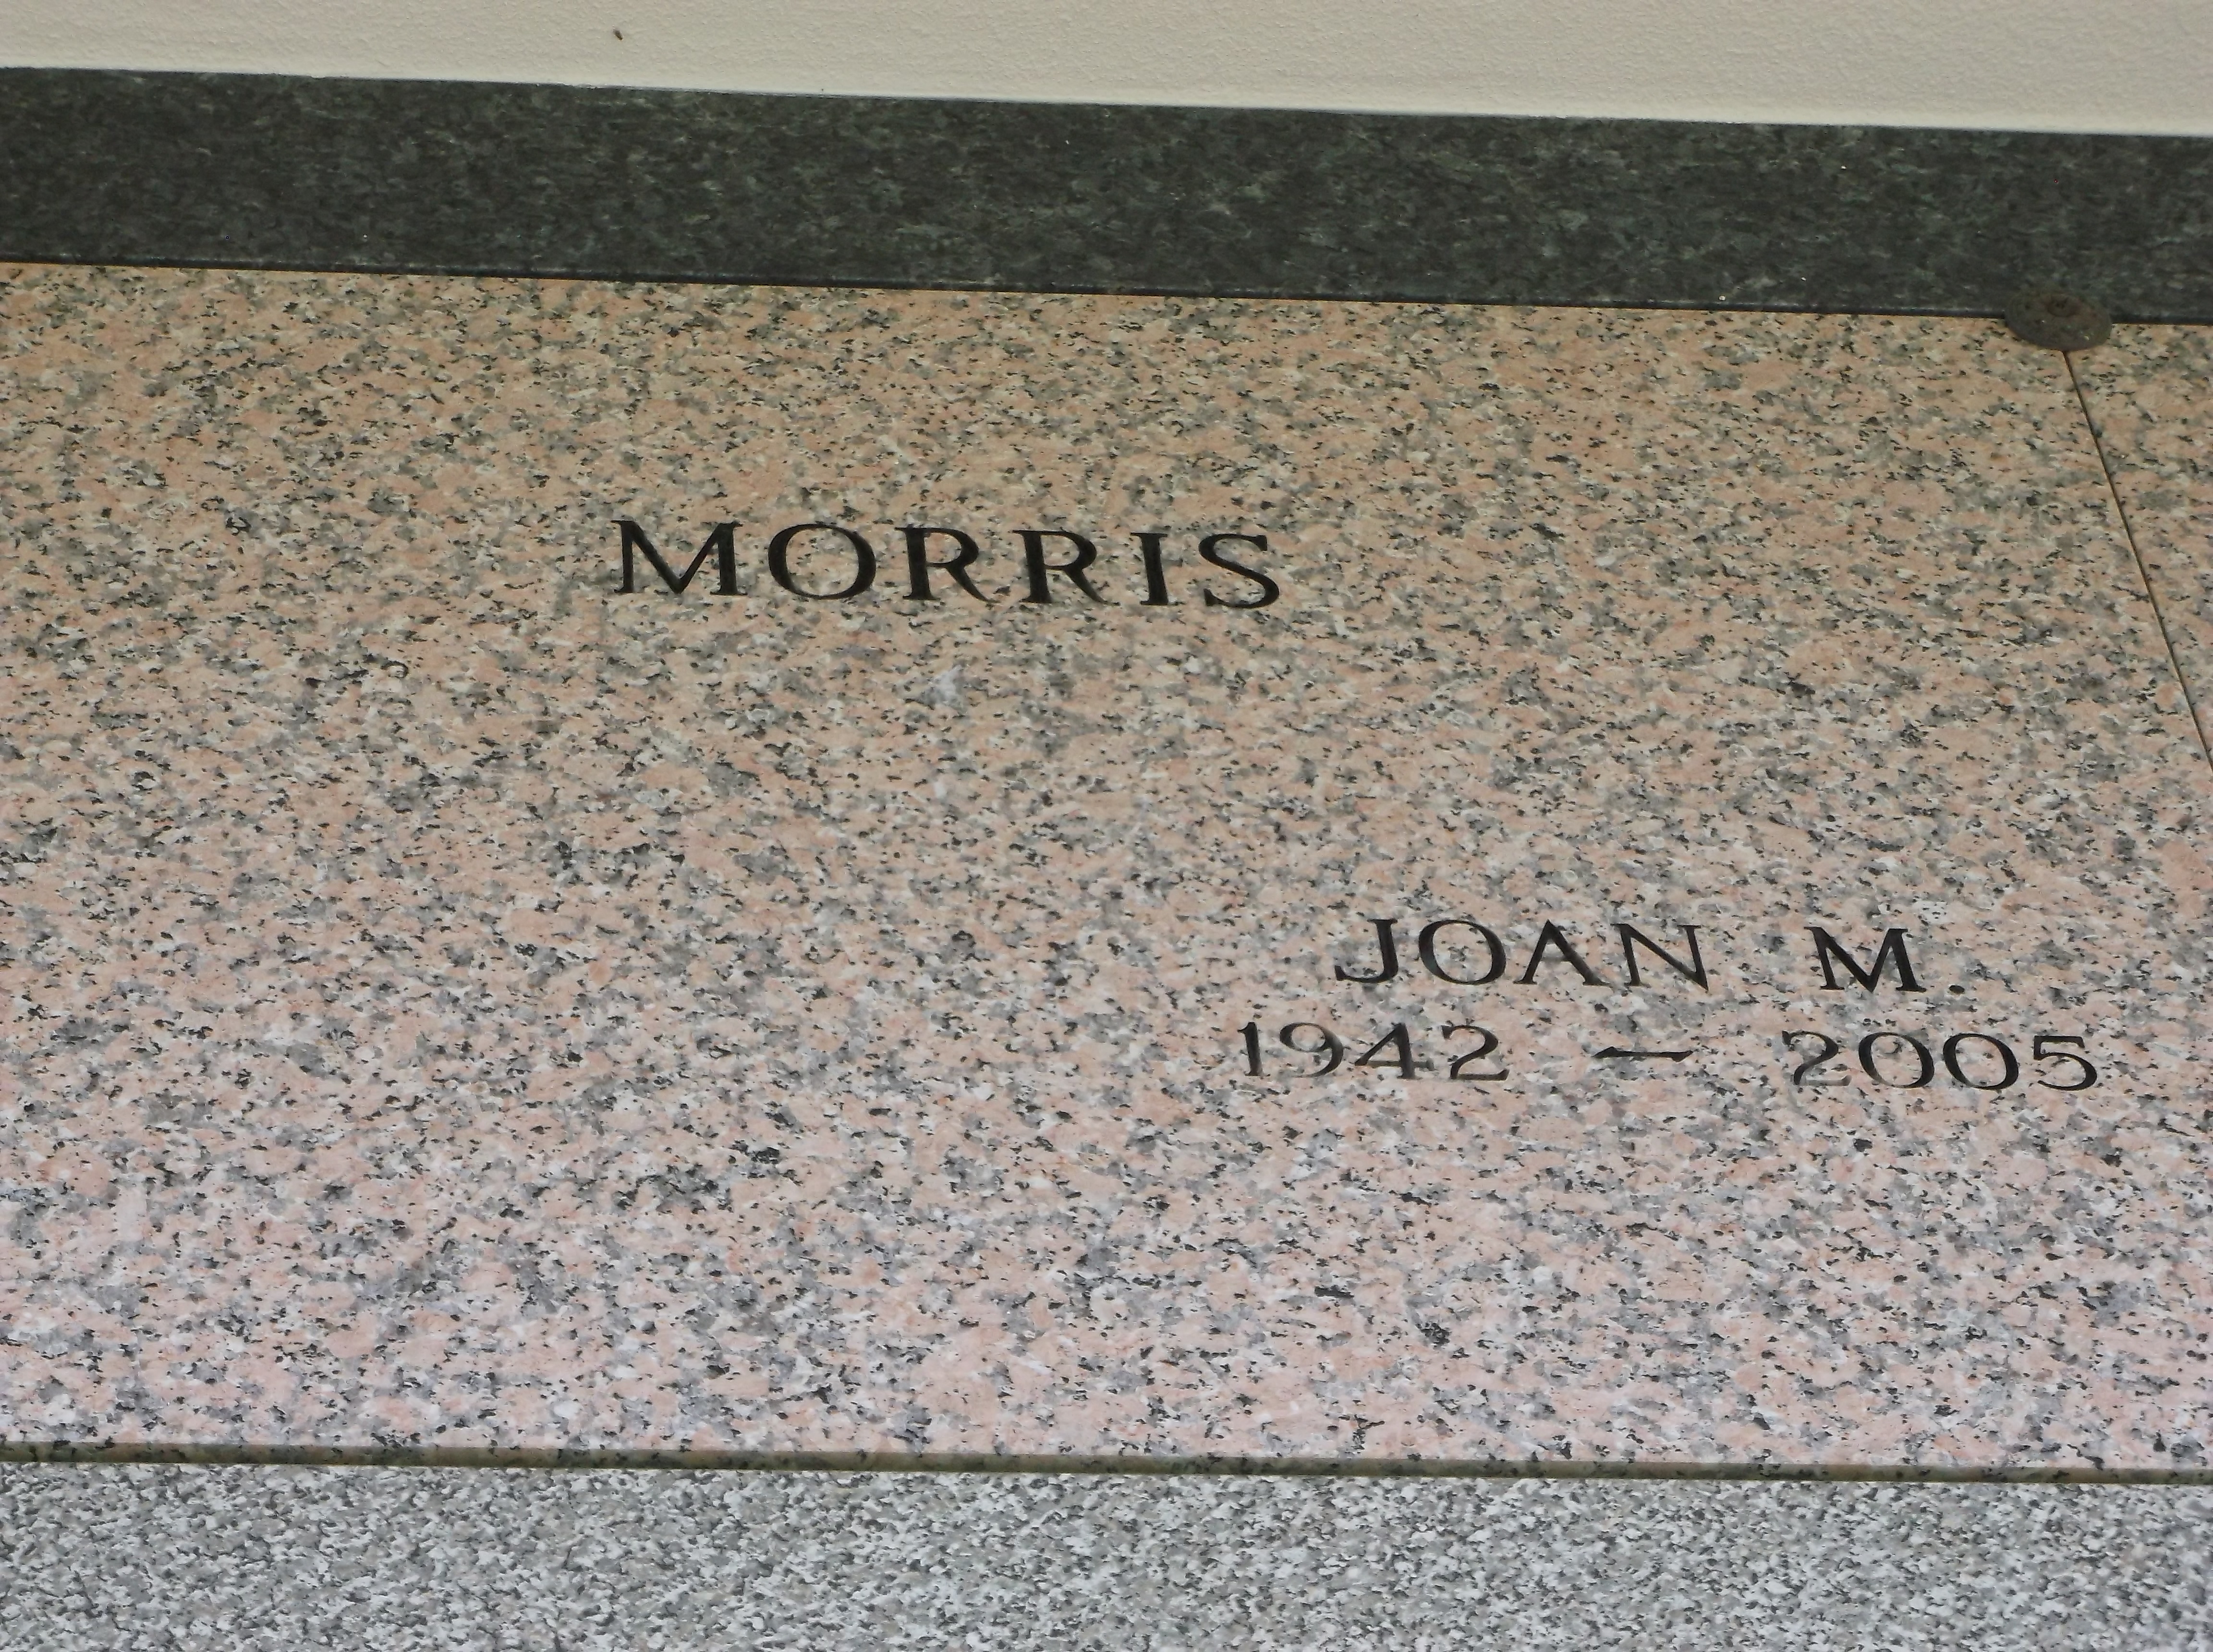 Joan M Morris